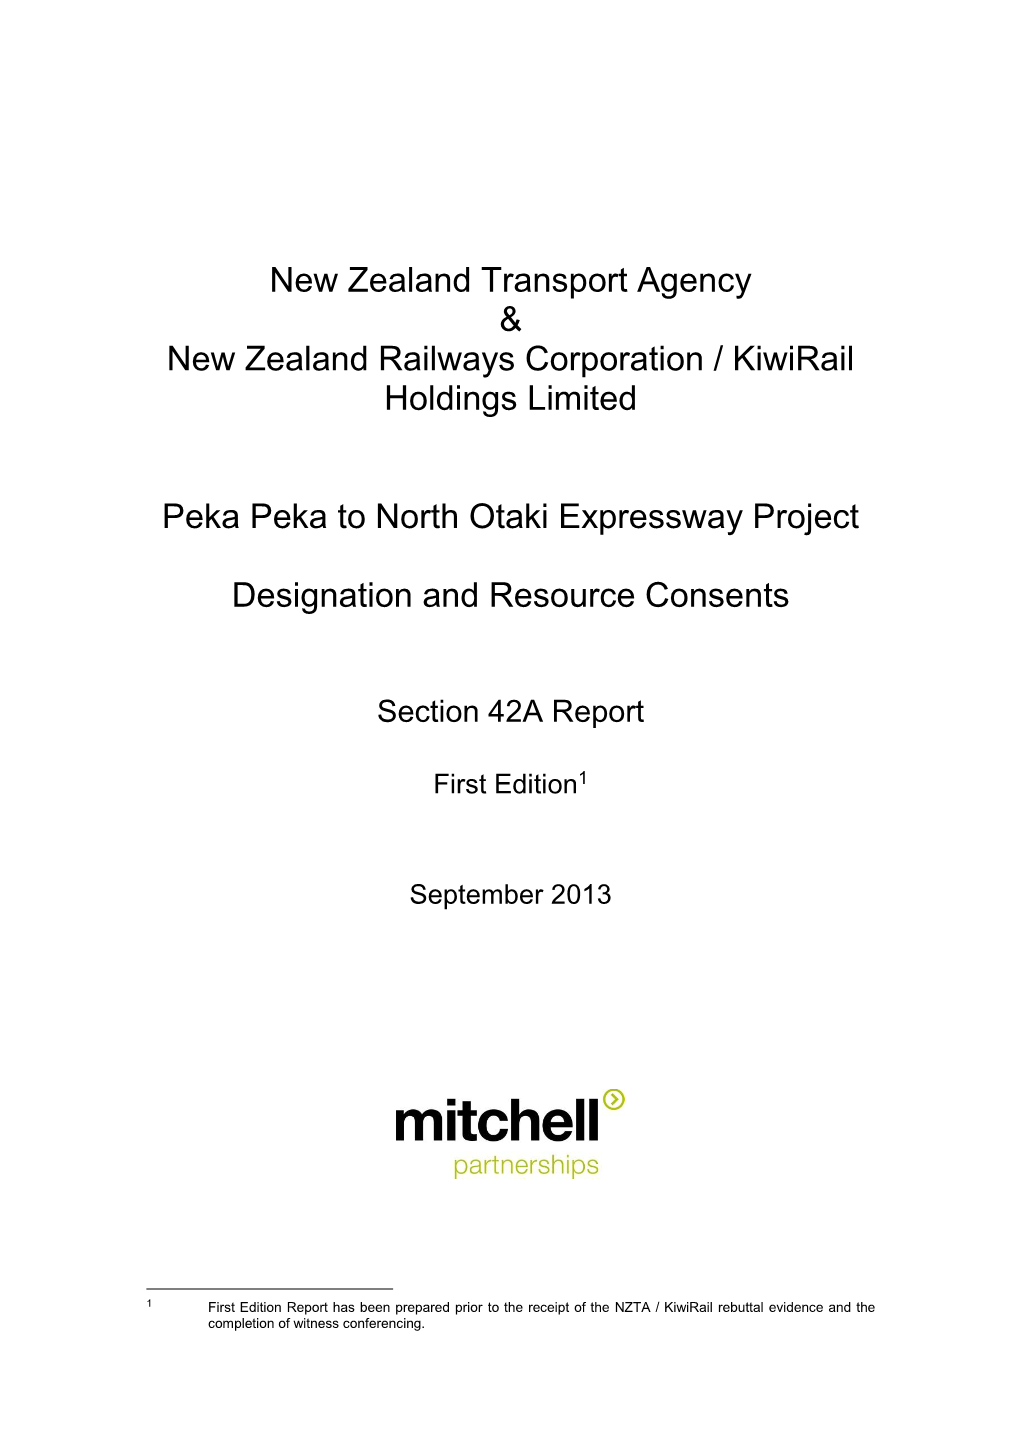 New Zealand Transport Agency & New Zealand Railways Corporation